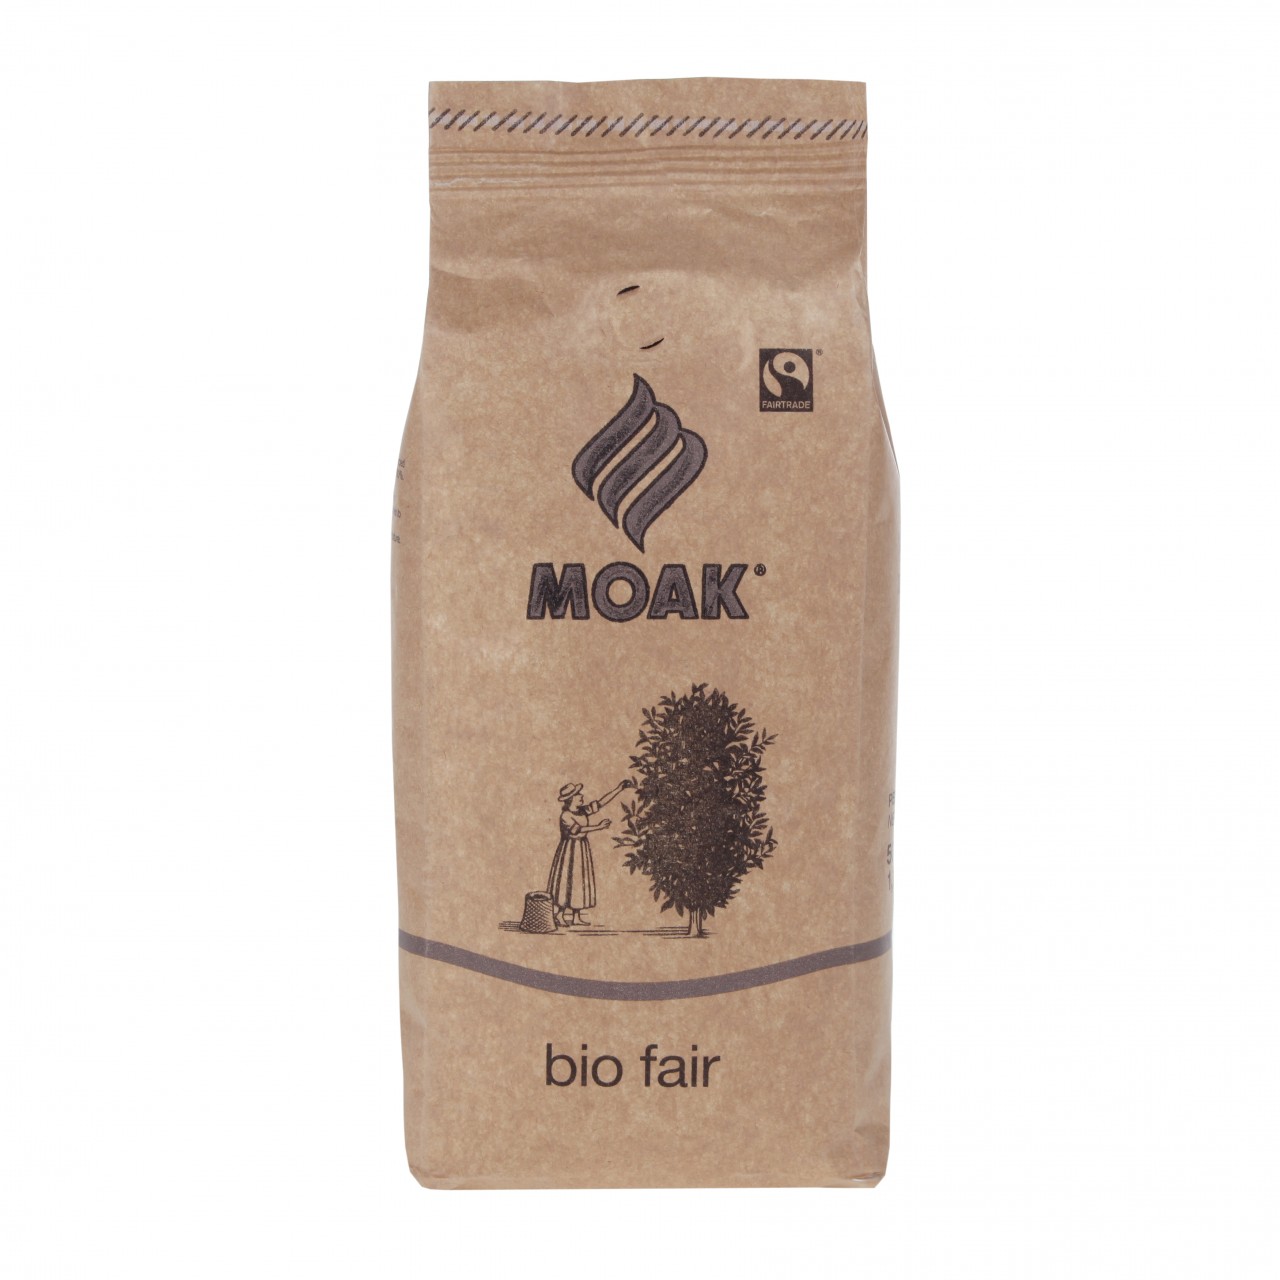 Moak Organic Fair Coffee